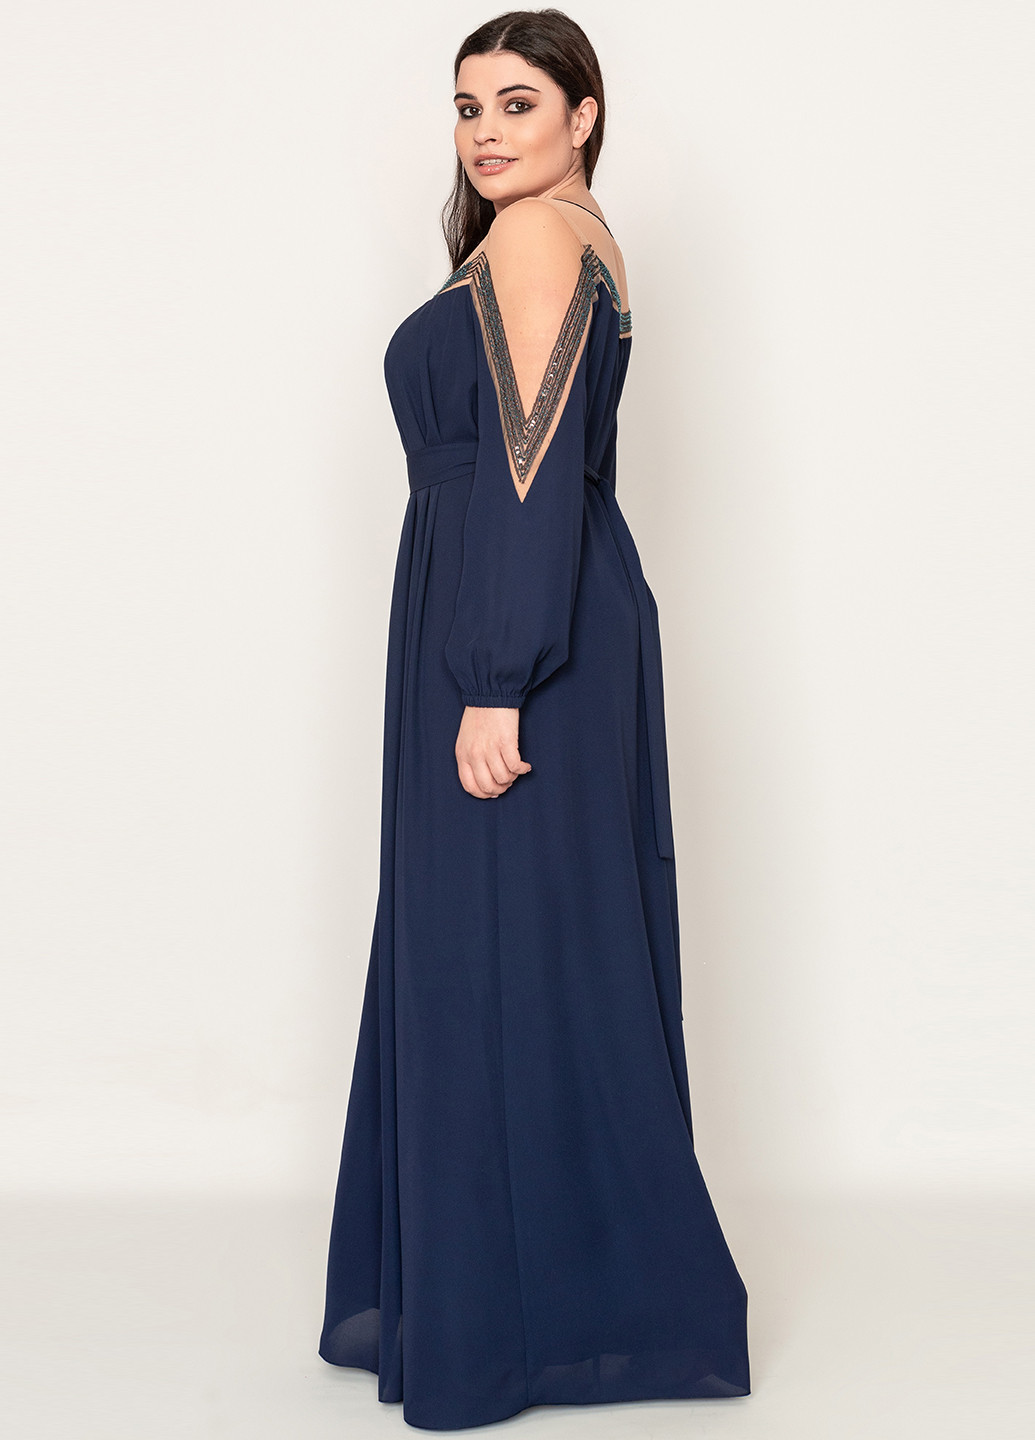 Темно-синее вечернее платье макси, с длинным рукавом Seam однотонное